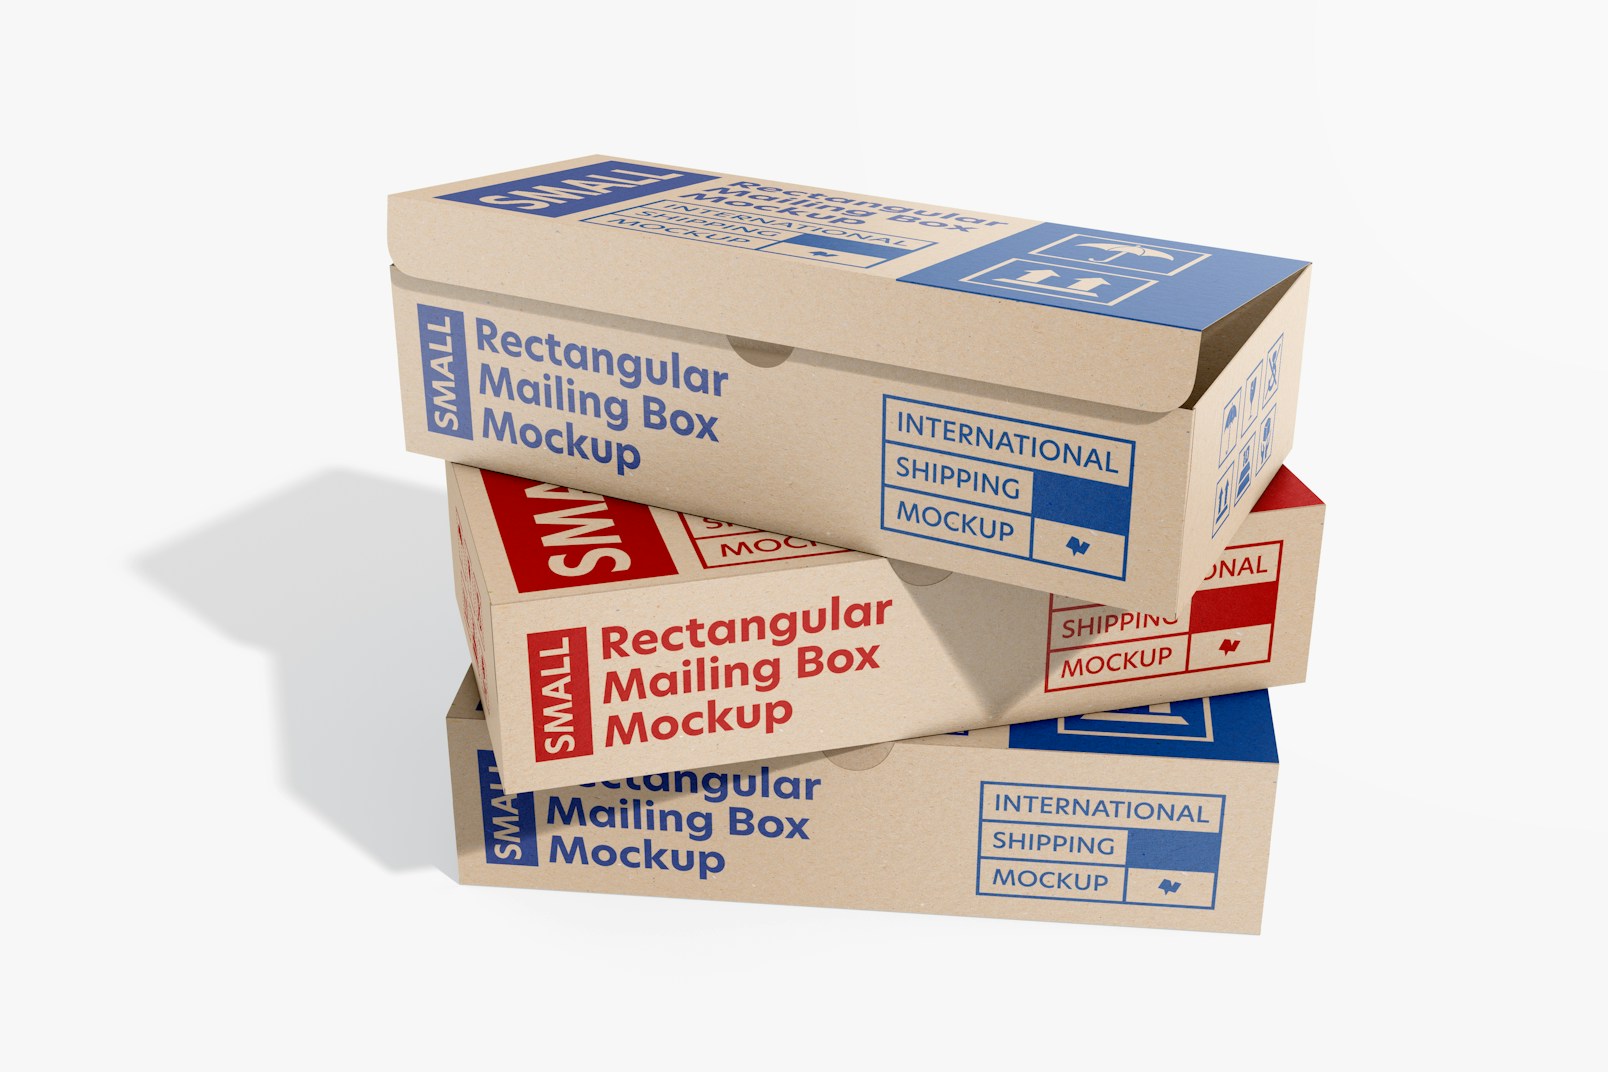 Rectangular Mailing Boxes Mockup, Stacked